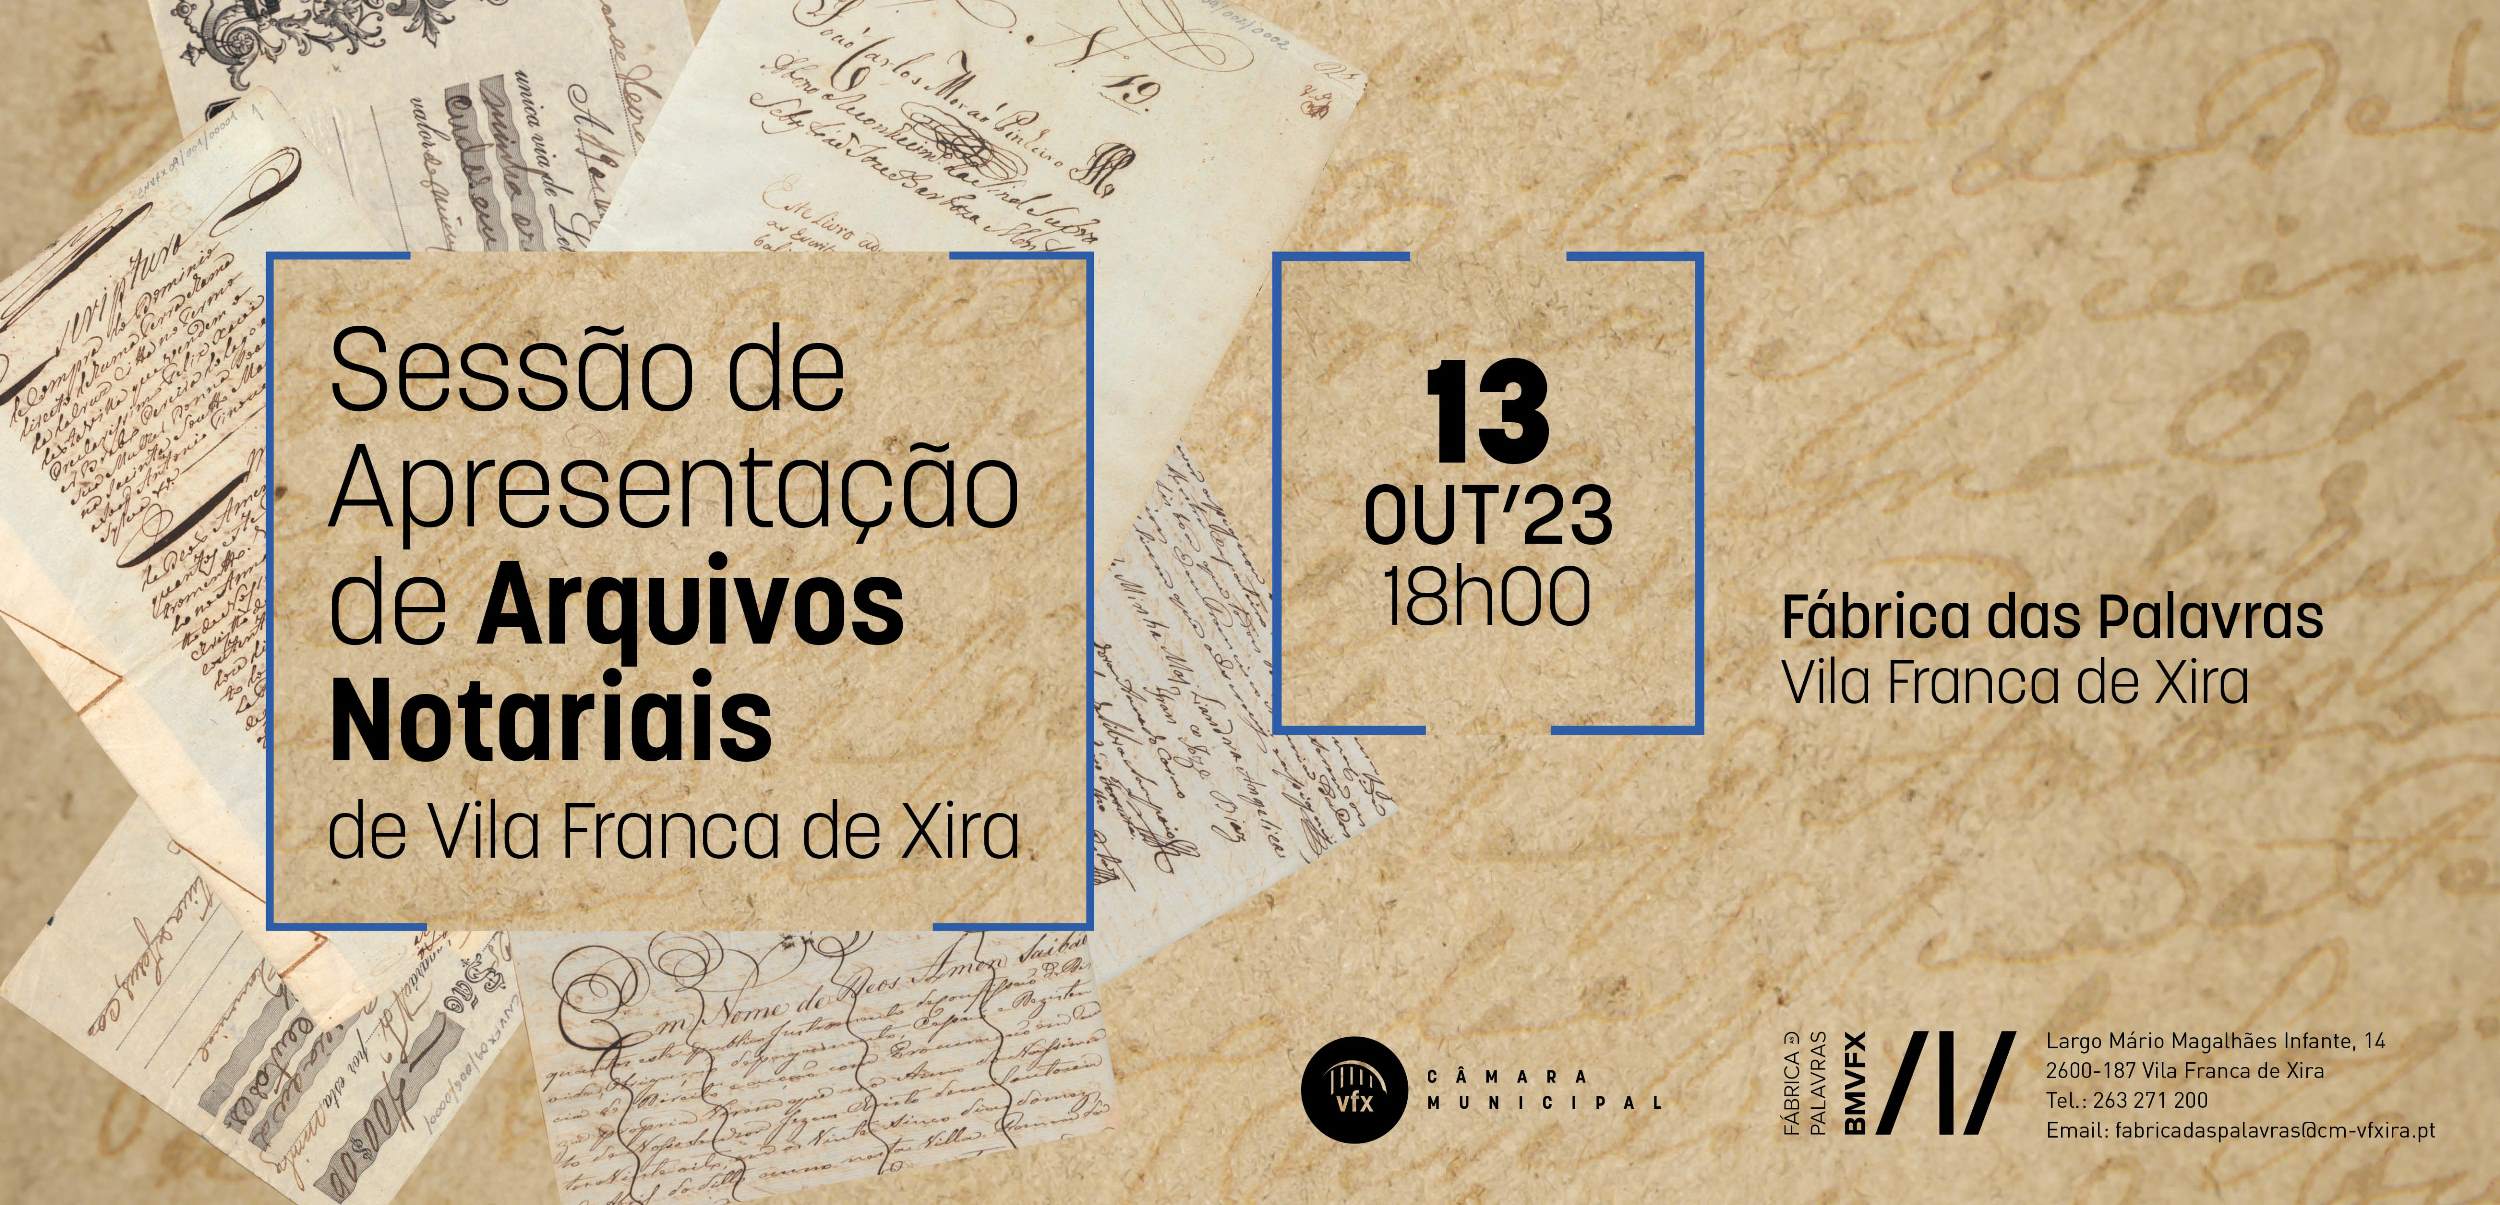 Sessão de apresentação de Arquivos Notariais de Vila Franca de Xira